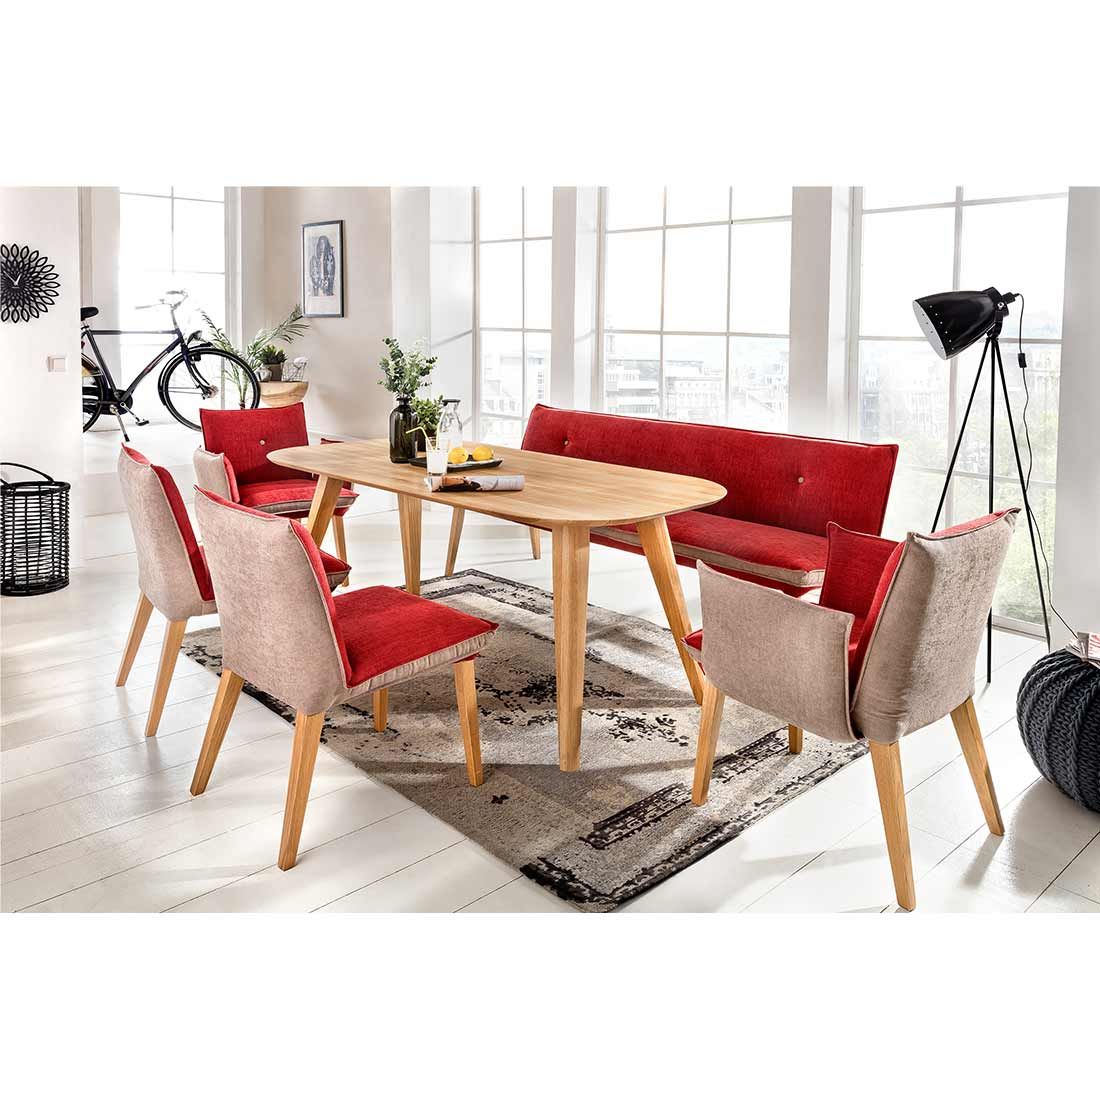 Standard Furniture Ottawa Esstisch 200x100cm